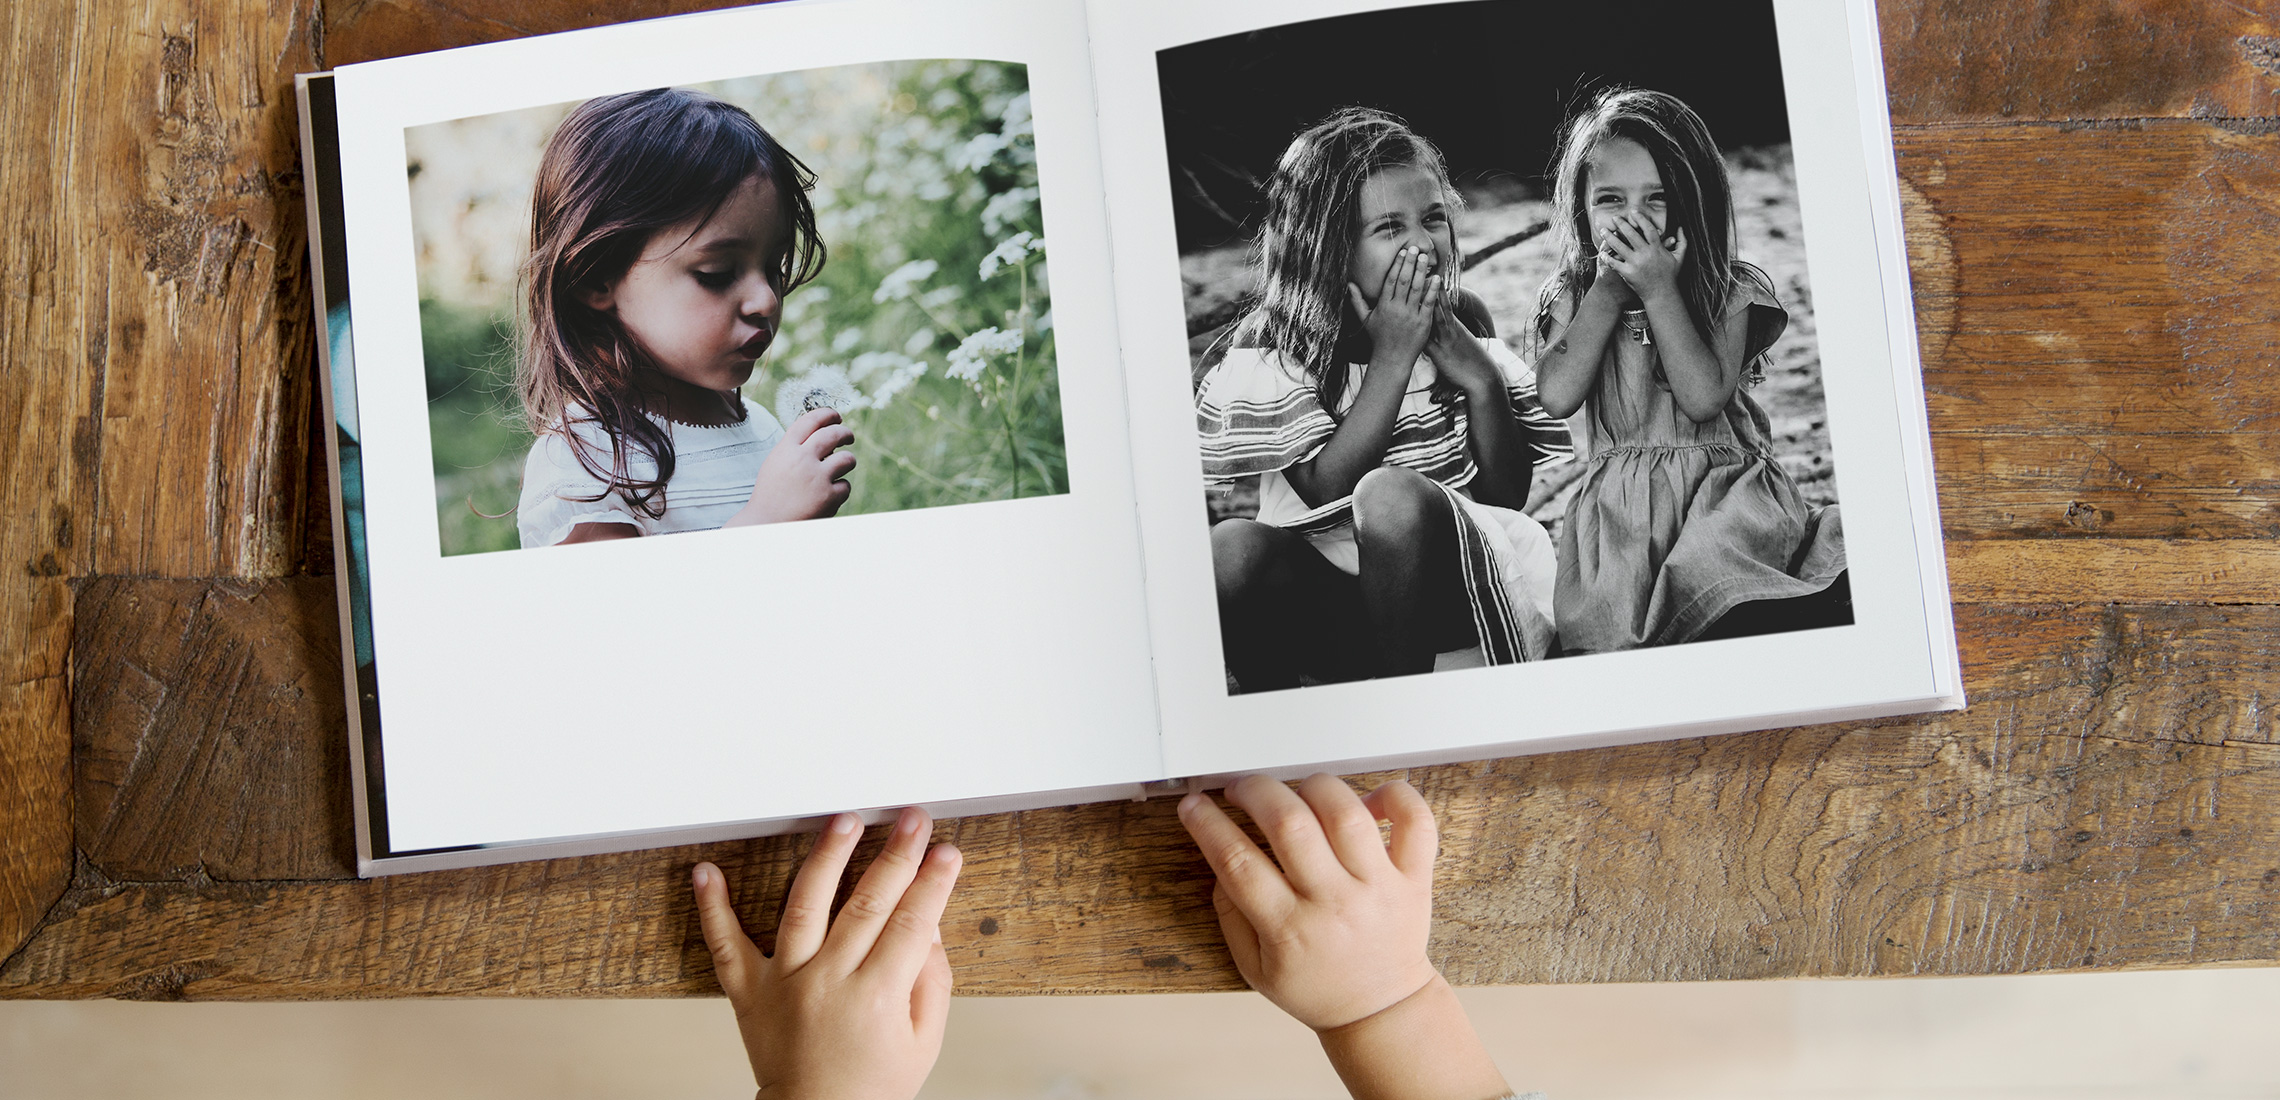 Un ragazzino che sfoglia un album fotografico quadrato con immagini di ragazze che ridono.